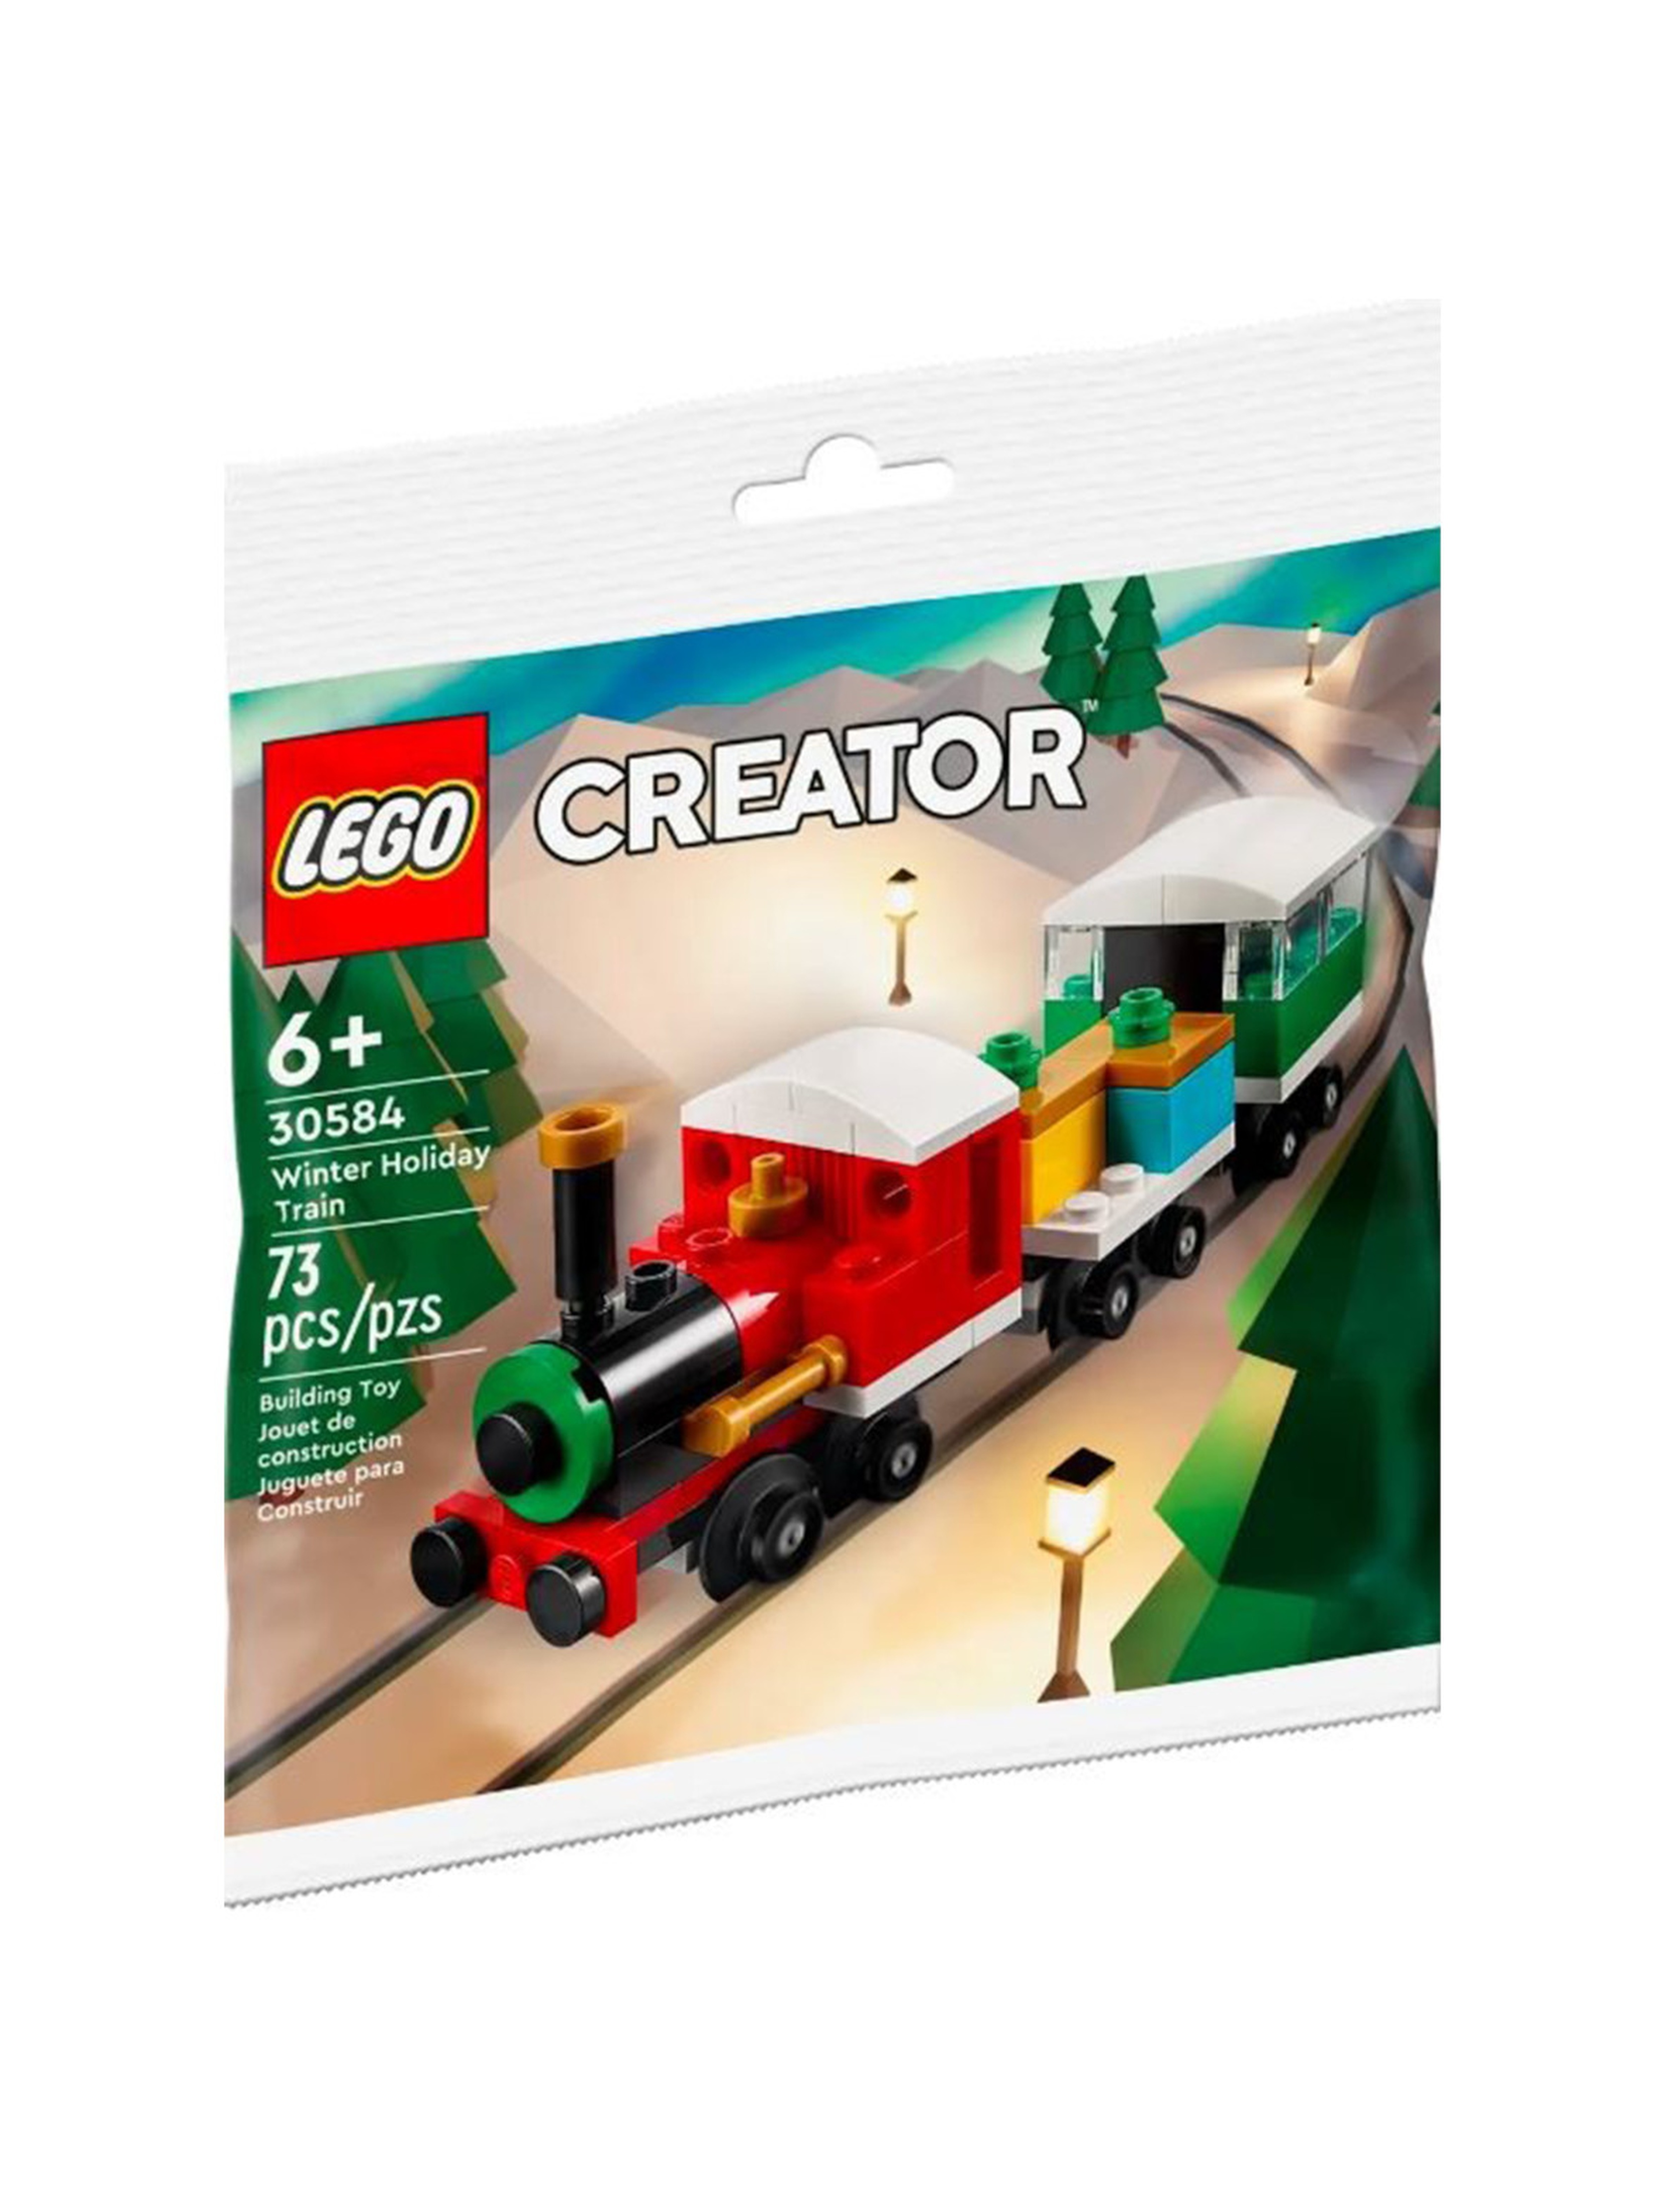 Klocki LEGO Creator 30584 Świąteczny pociąg - 73 elementy, wiek 6 +